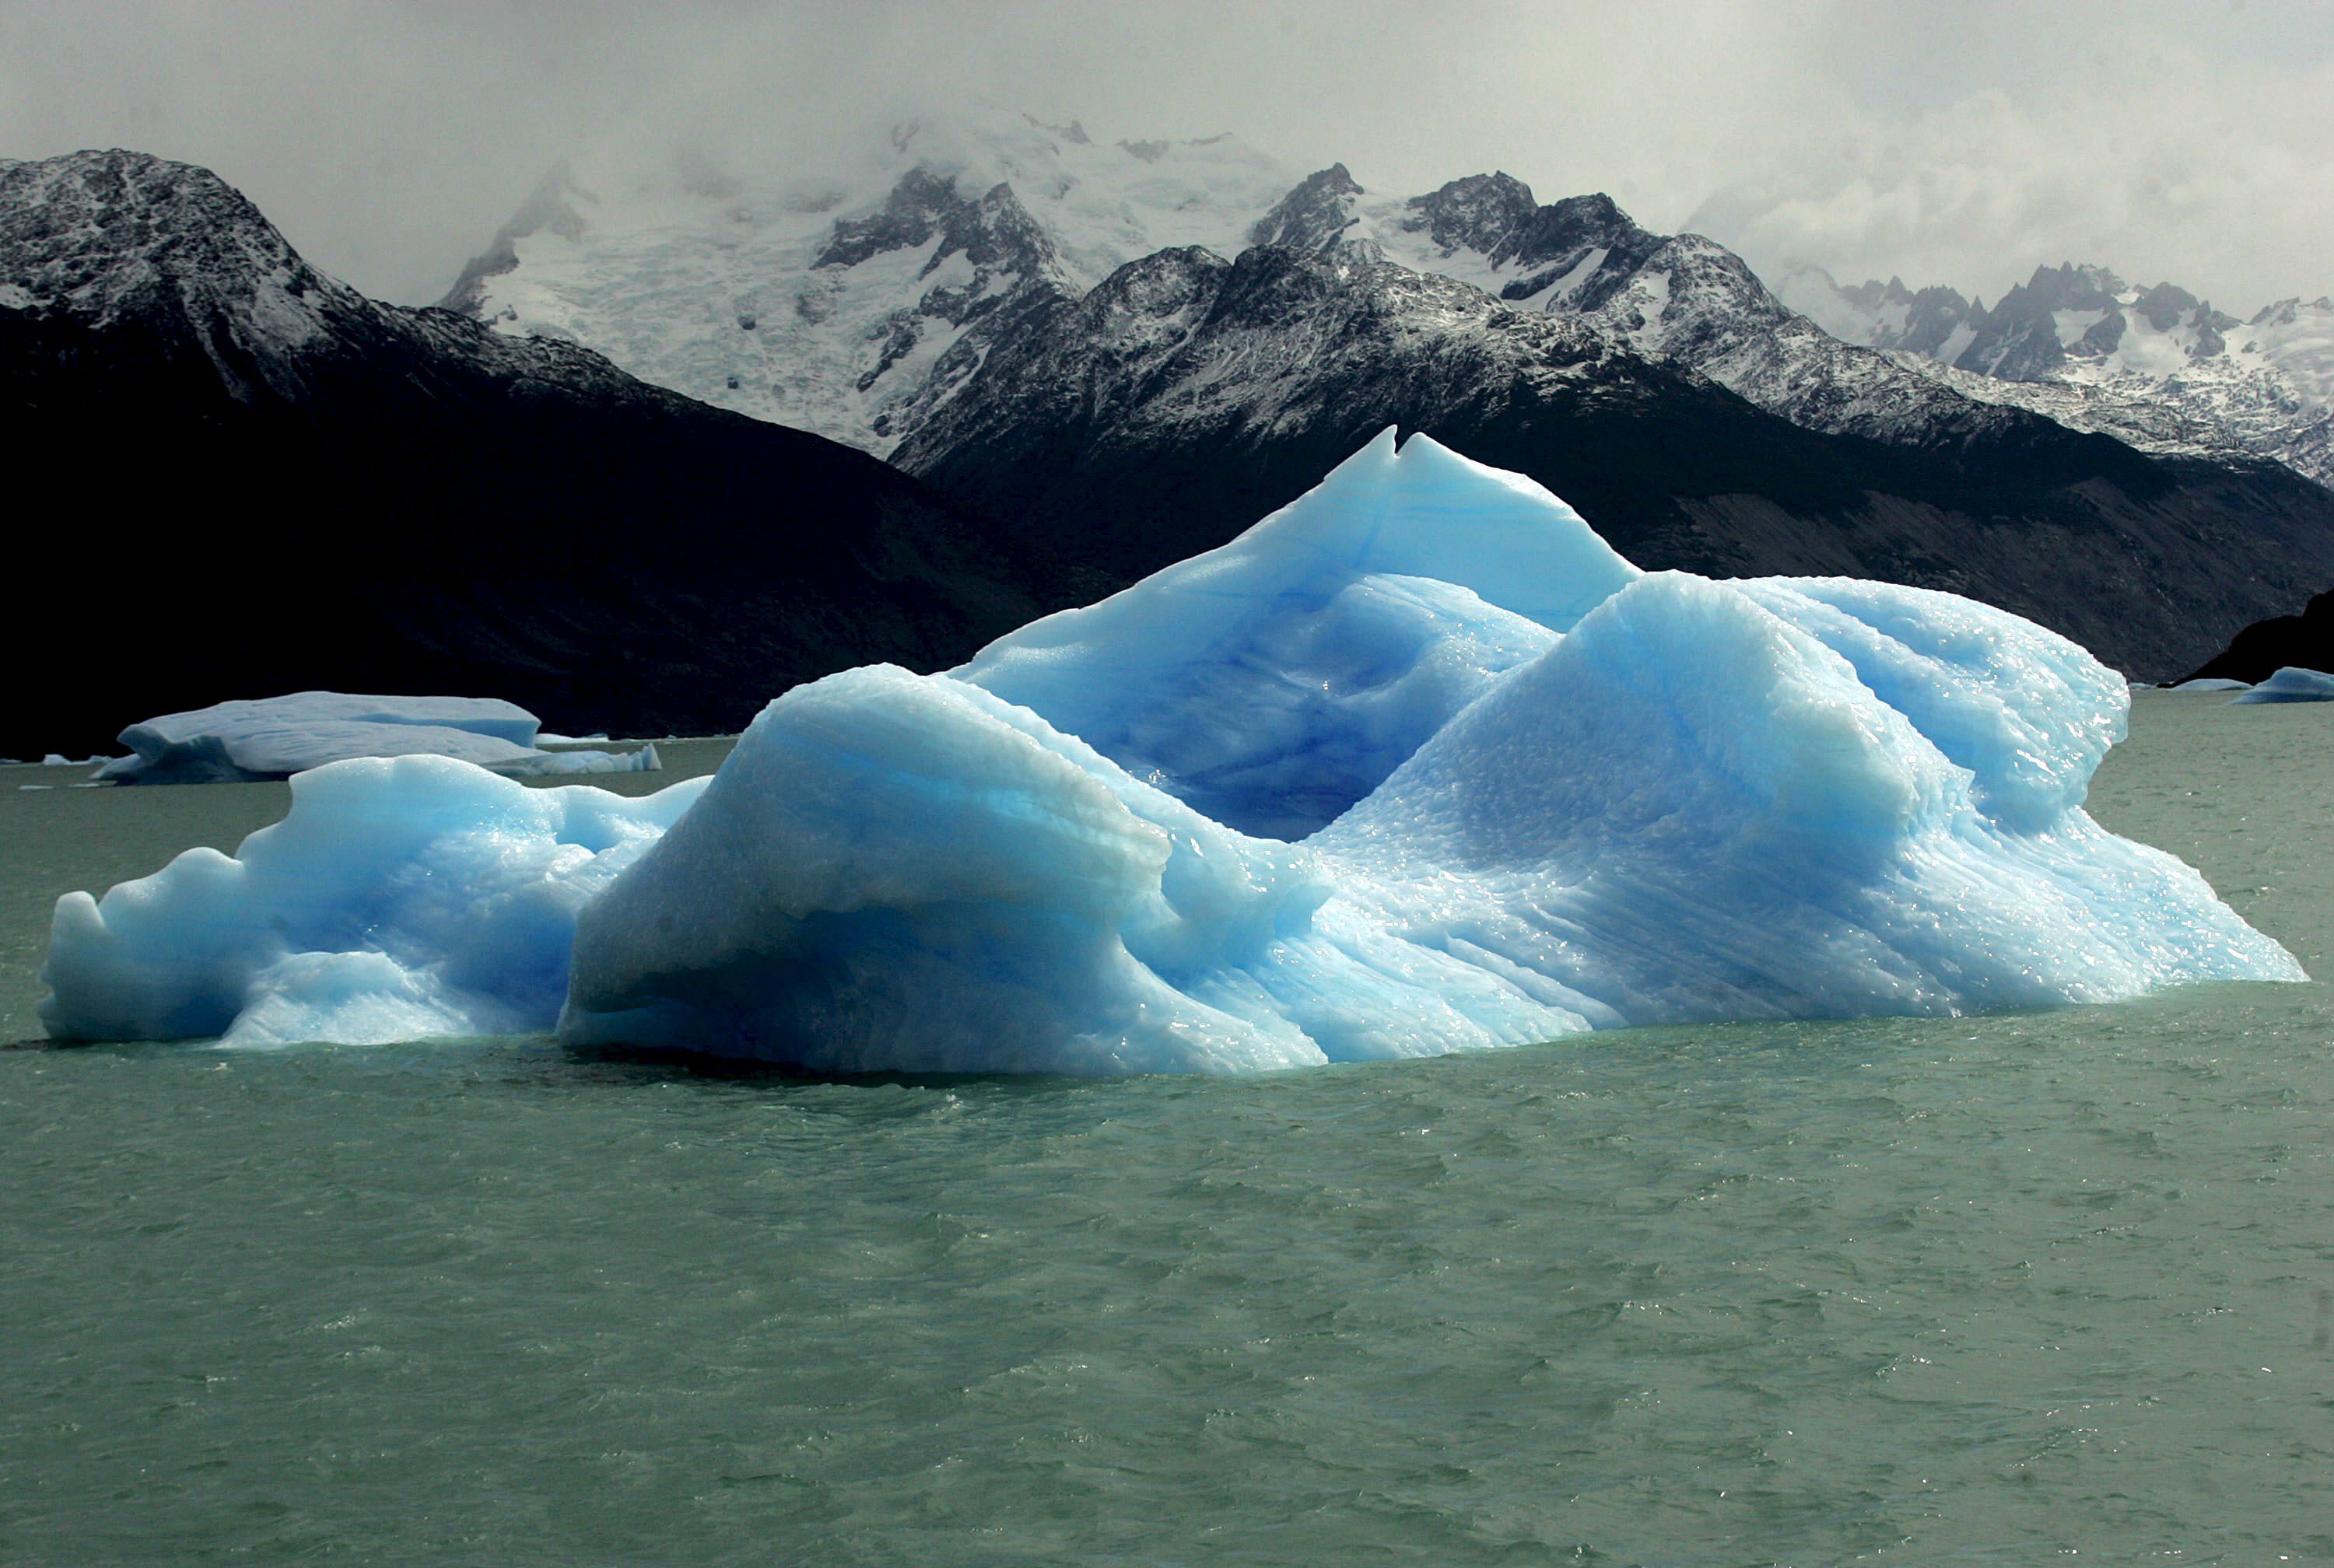 Las represas tendrá una afectación sobre el lago y podría afectar la dinámica hídrica de los glaciares Perito Moreno, Upsala y Spegazzini, señalaron desde Fundación Vida Silvestre (EFE/Orestis Panagiotou/Archivo)
